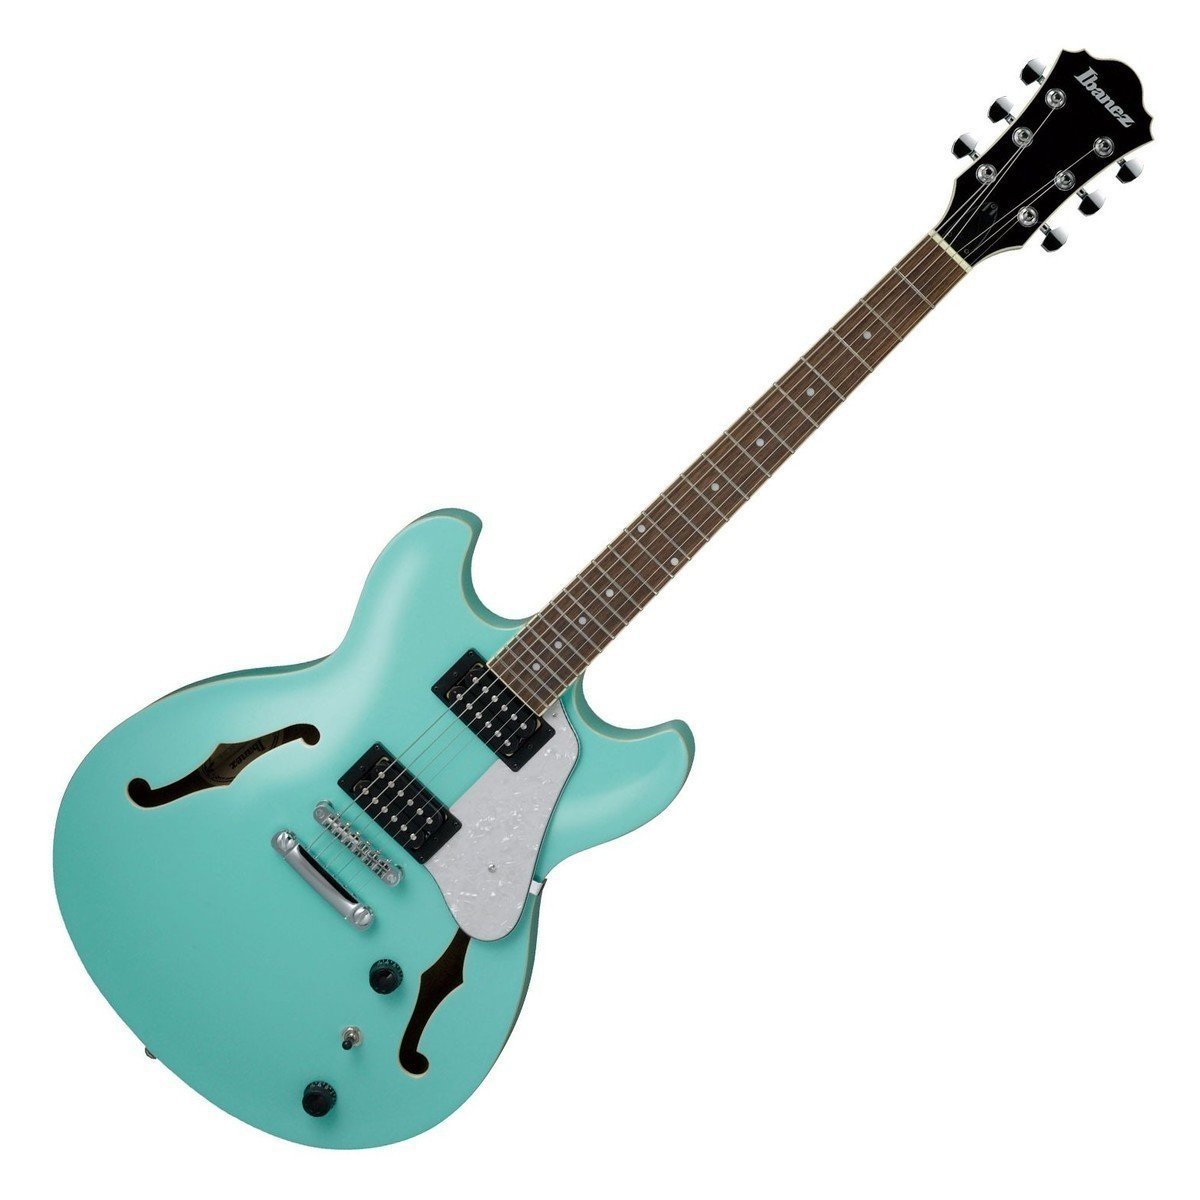 Semiakustická kytara Ibanez AS63 SFG Sea Foam Green